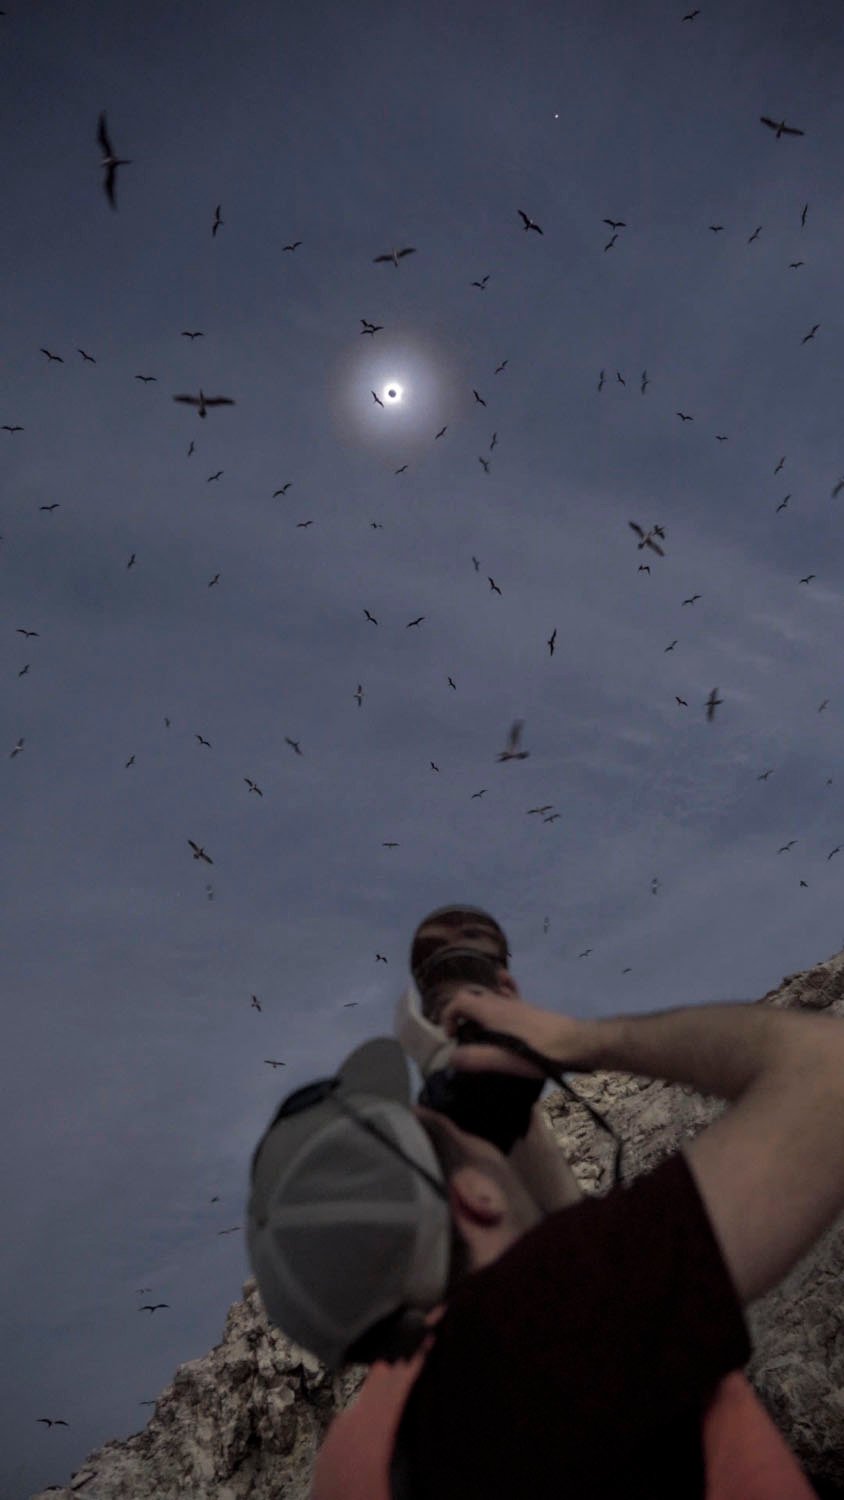 Una persona usa una cámara para fotografiar un eclipse lunar, rodeada de muchas aves voladoras bajo un cielo oscuro.